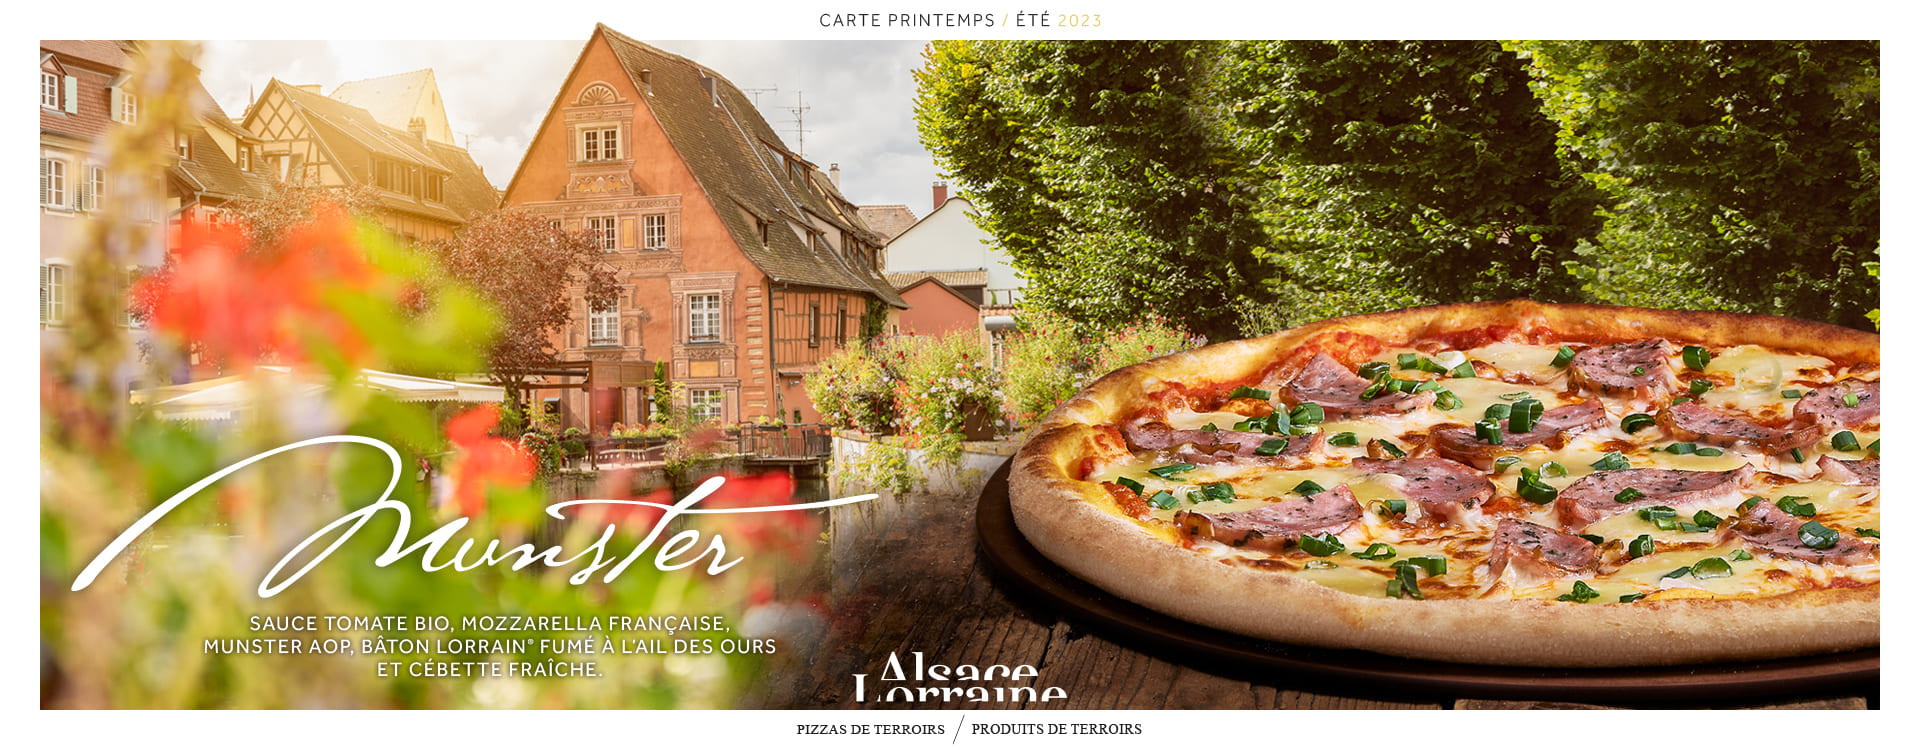 Pizza Munster des restaurants Basilic & Co, avec un village Alsacien en arrière-plan